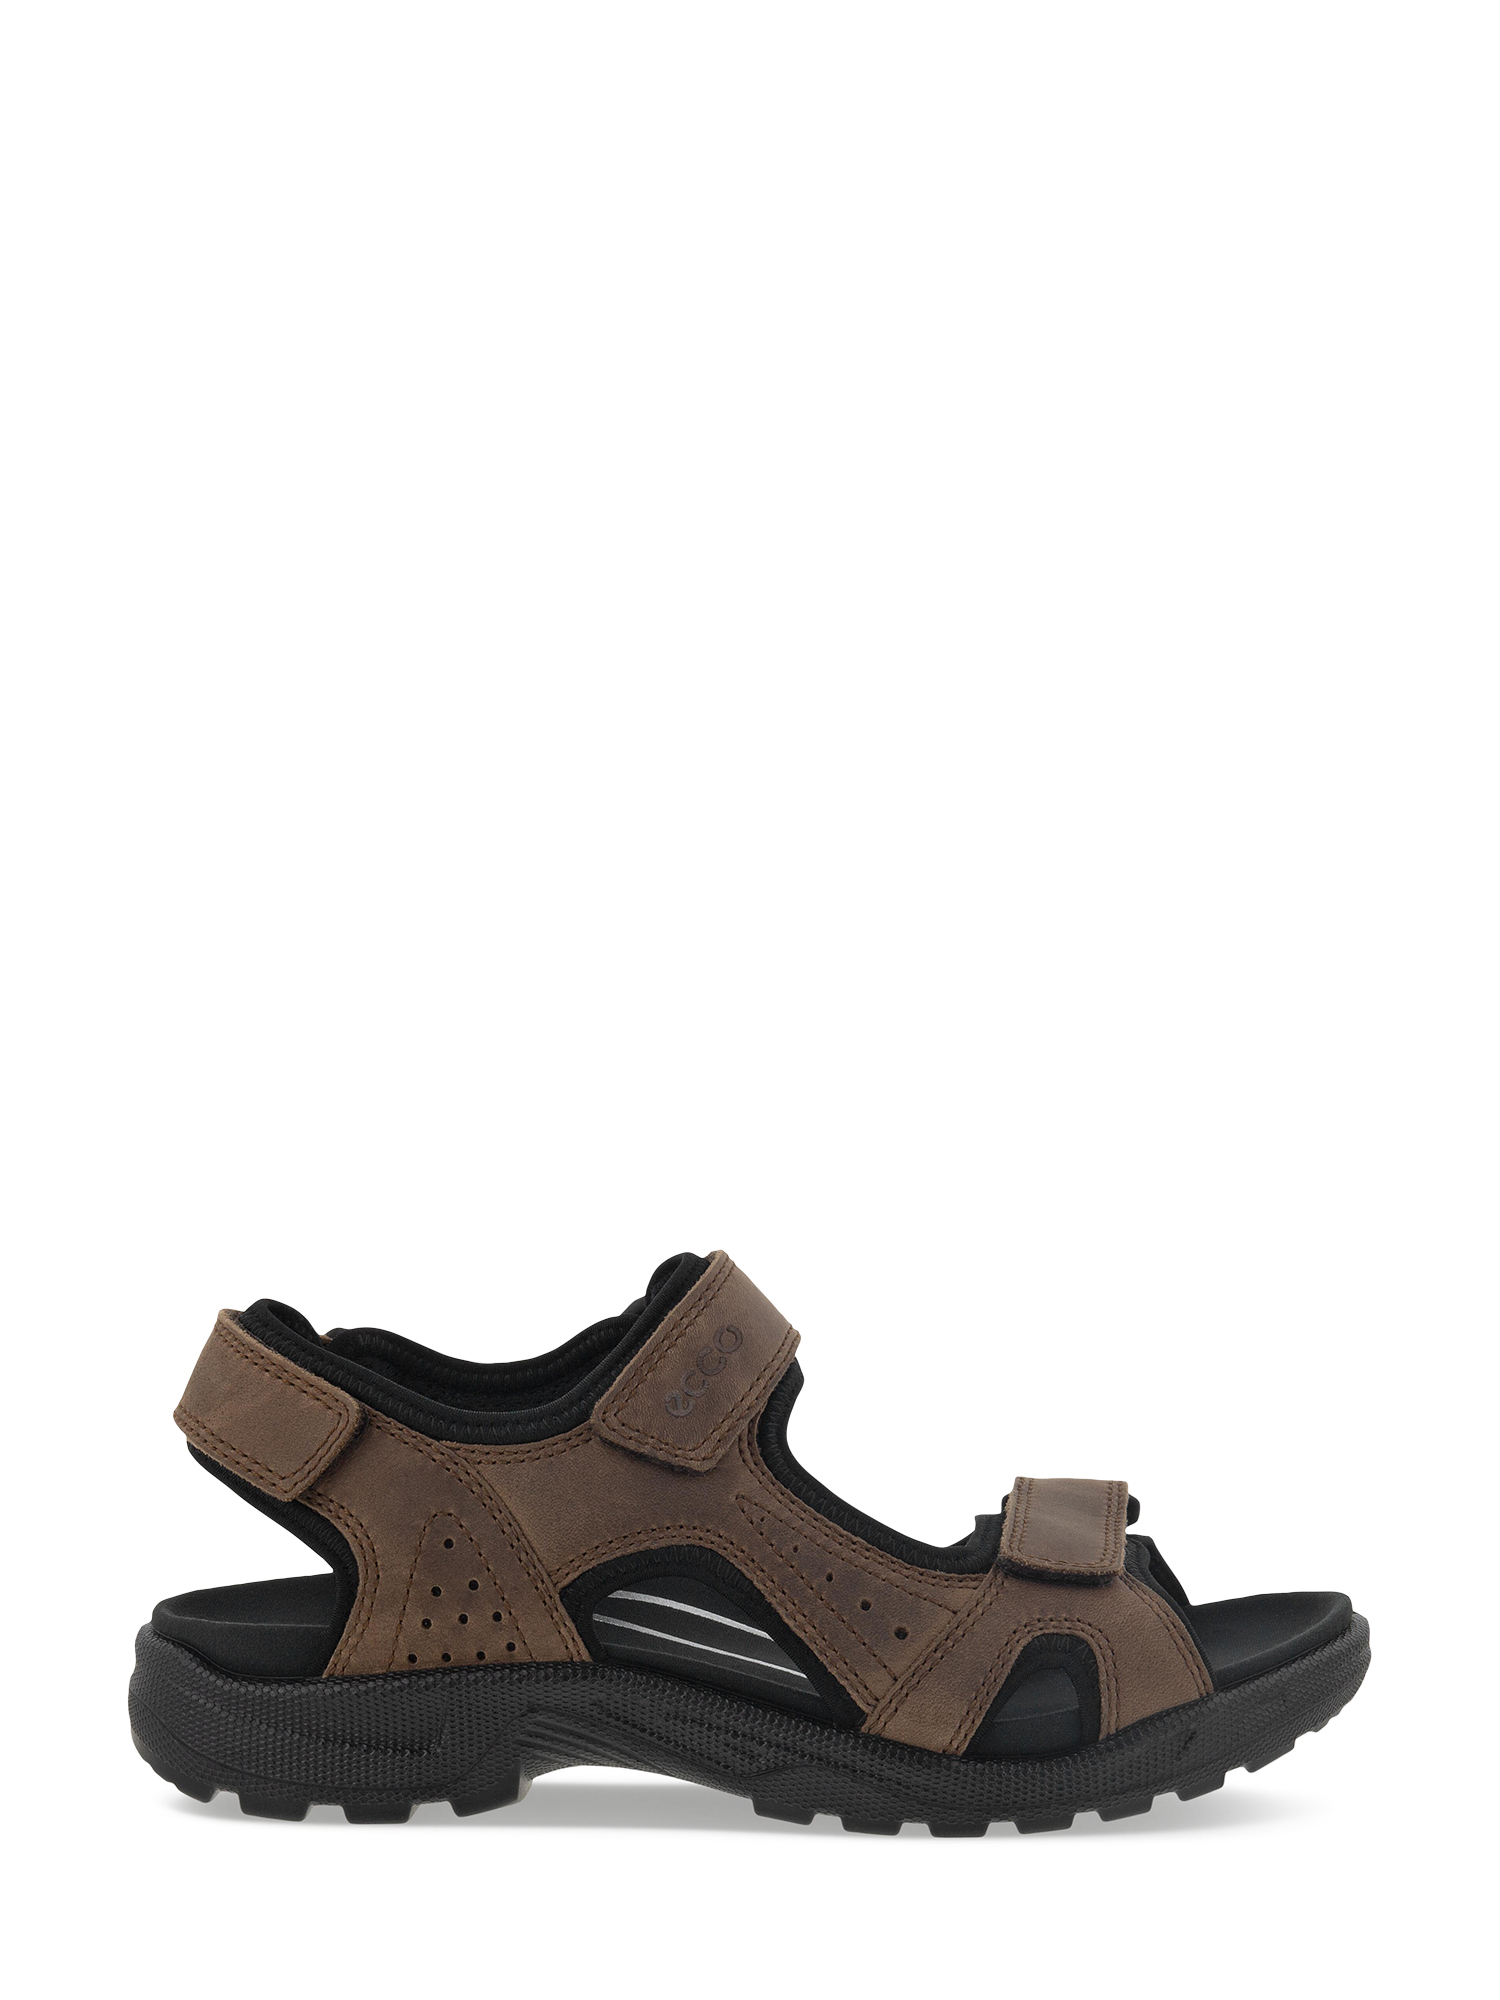 Bilde av Ecco Offroad Leather Sandal (42) - Brun